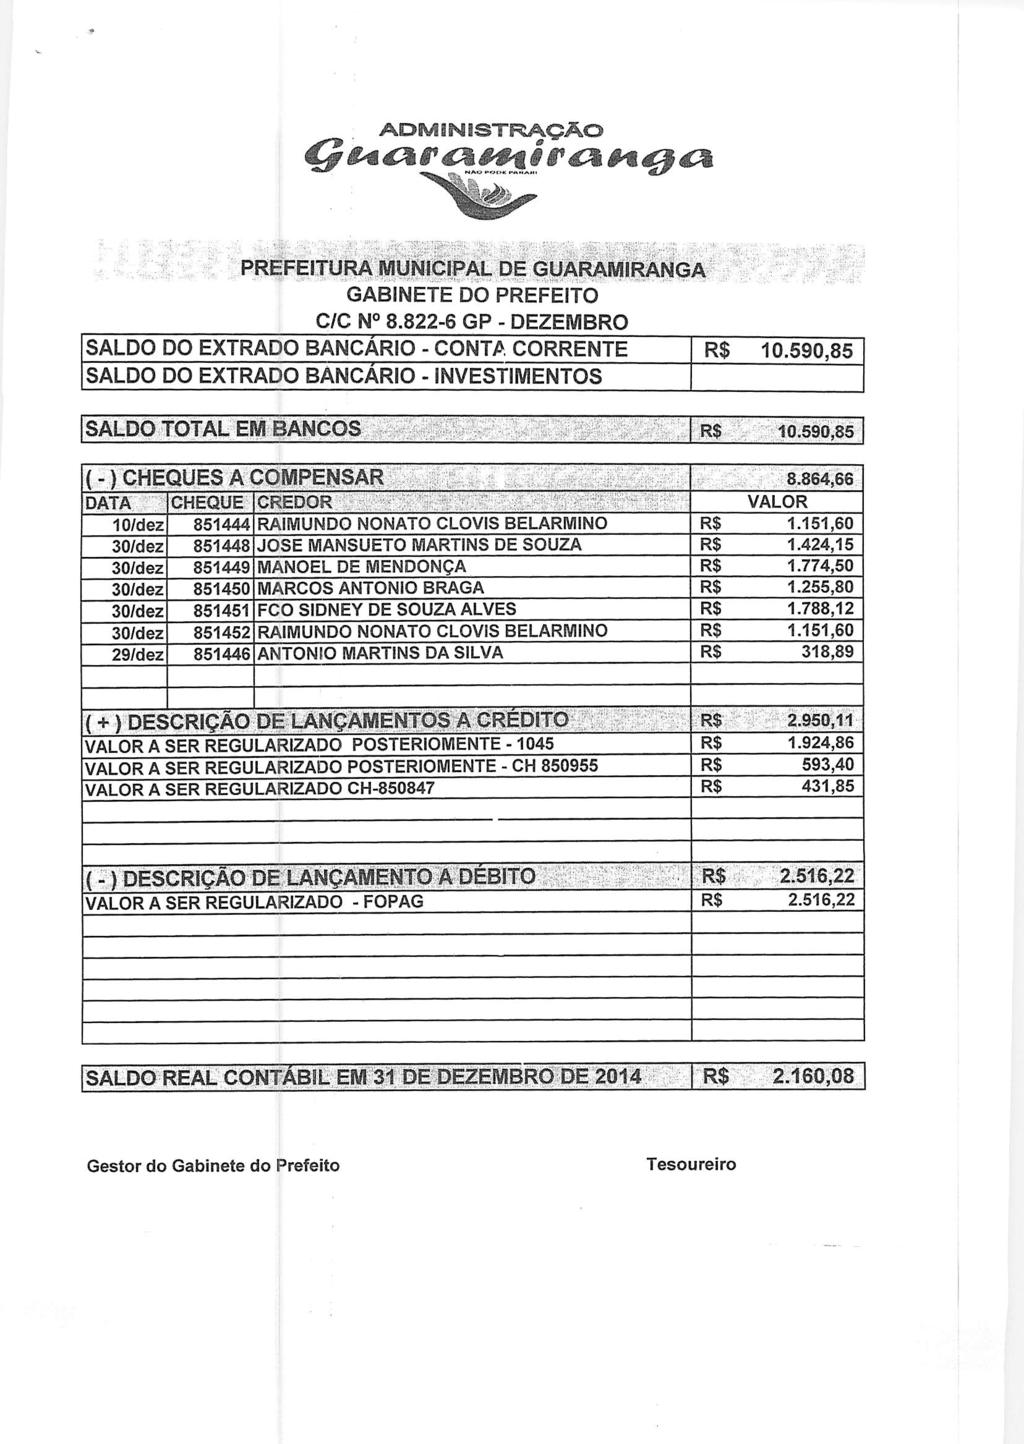 Pf^F^I^ ^;JBtí^^ pal DE GUARAMIRAN^ GABINETE DO PREFEITO C/C N 8.822-6 GP - DEZEMBRO SALDO DO EXTRADO BANCÁRIO - CONTA CORRENTE R$ 10.